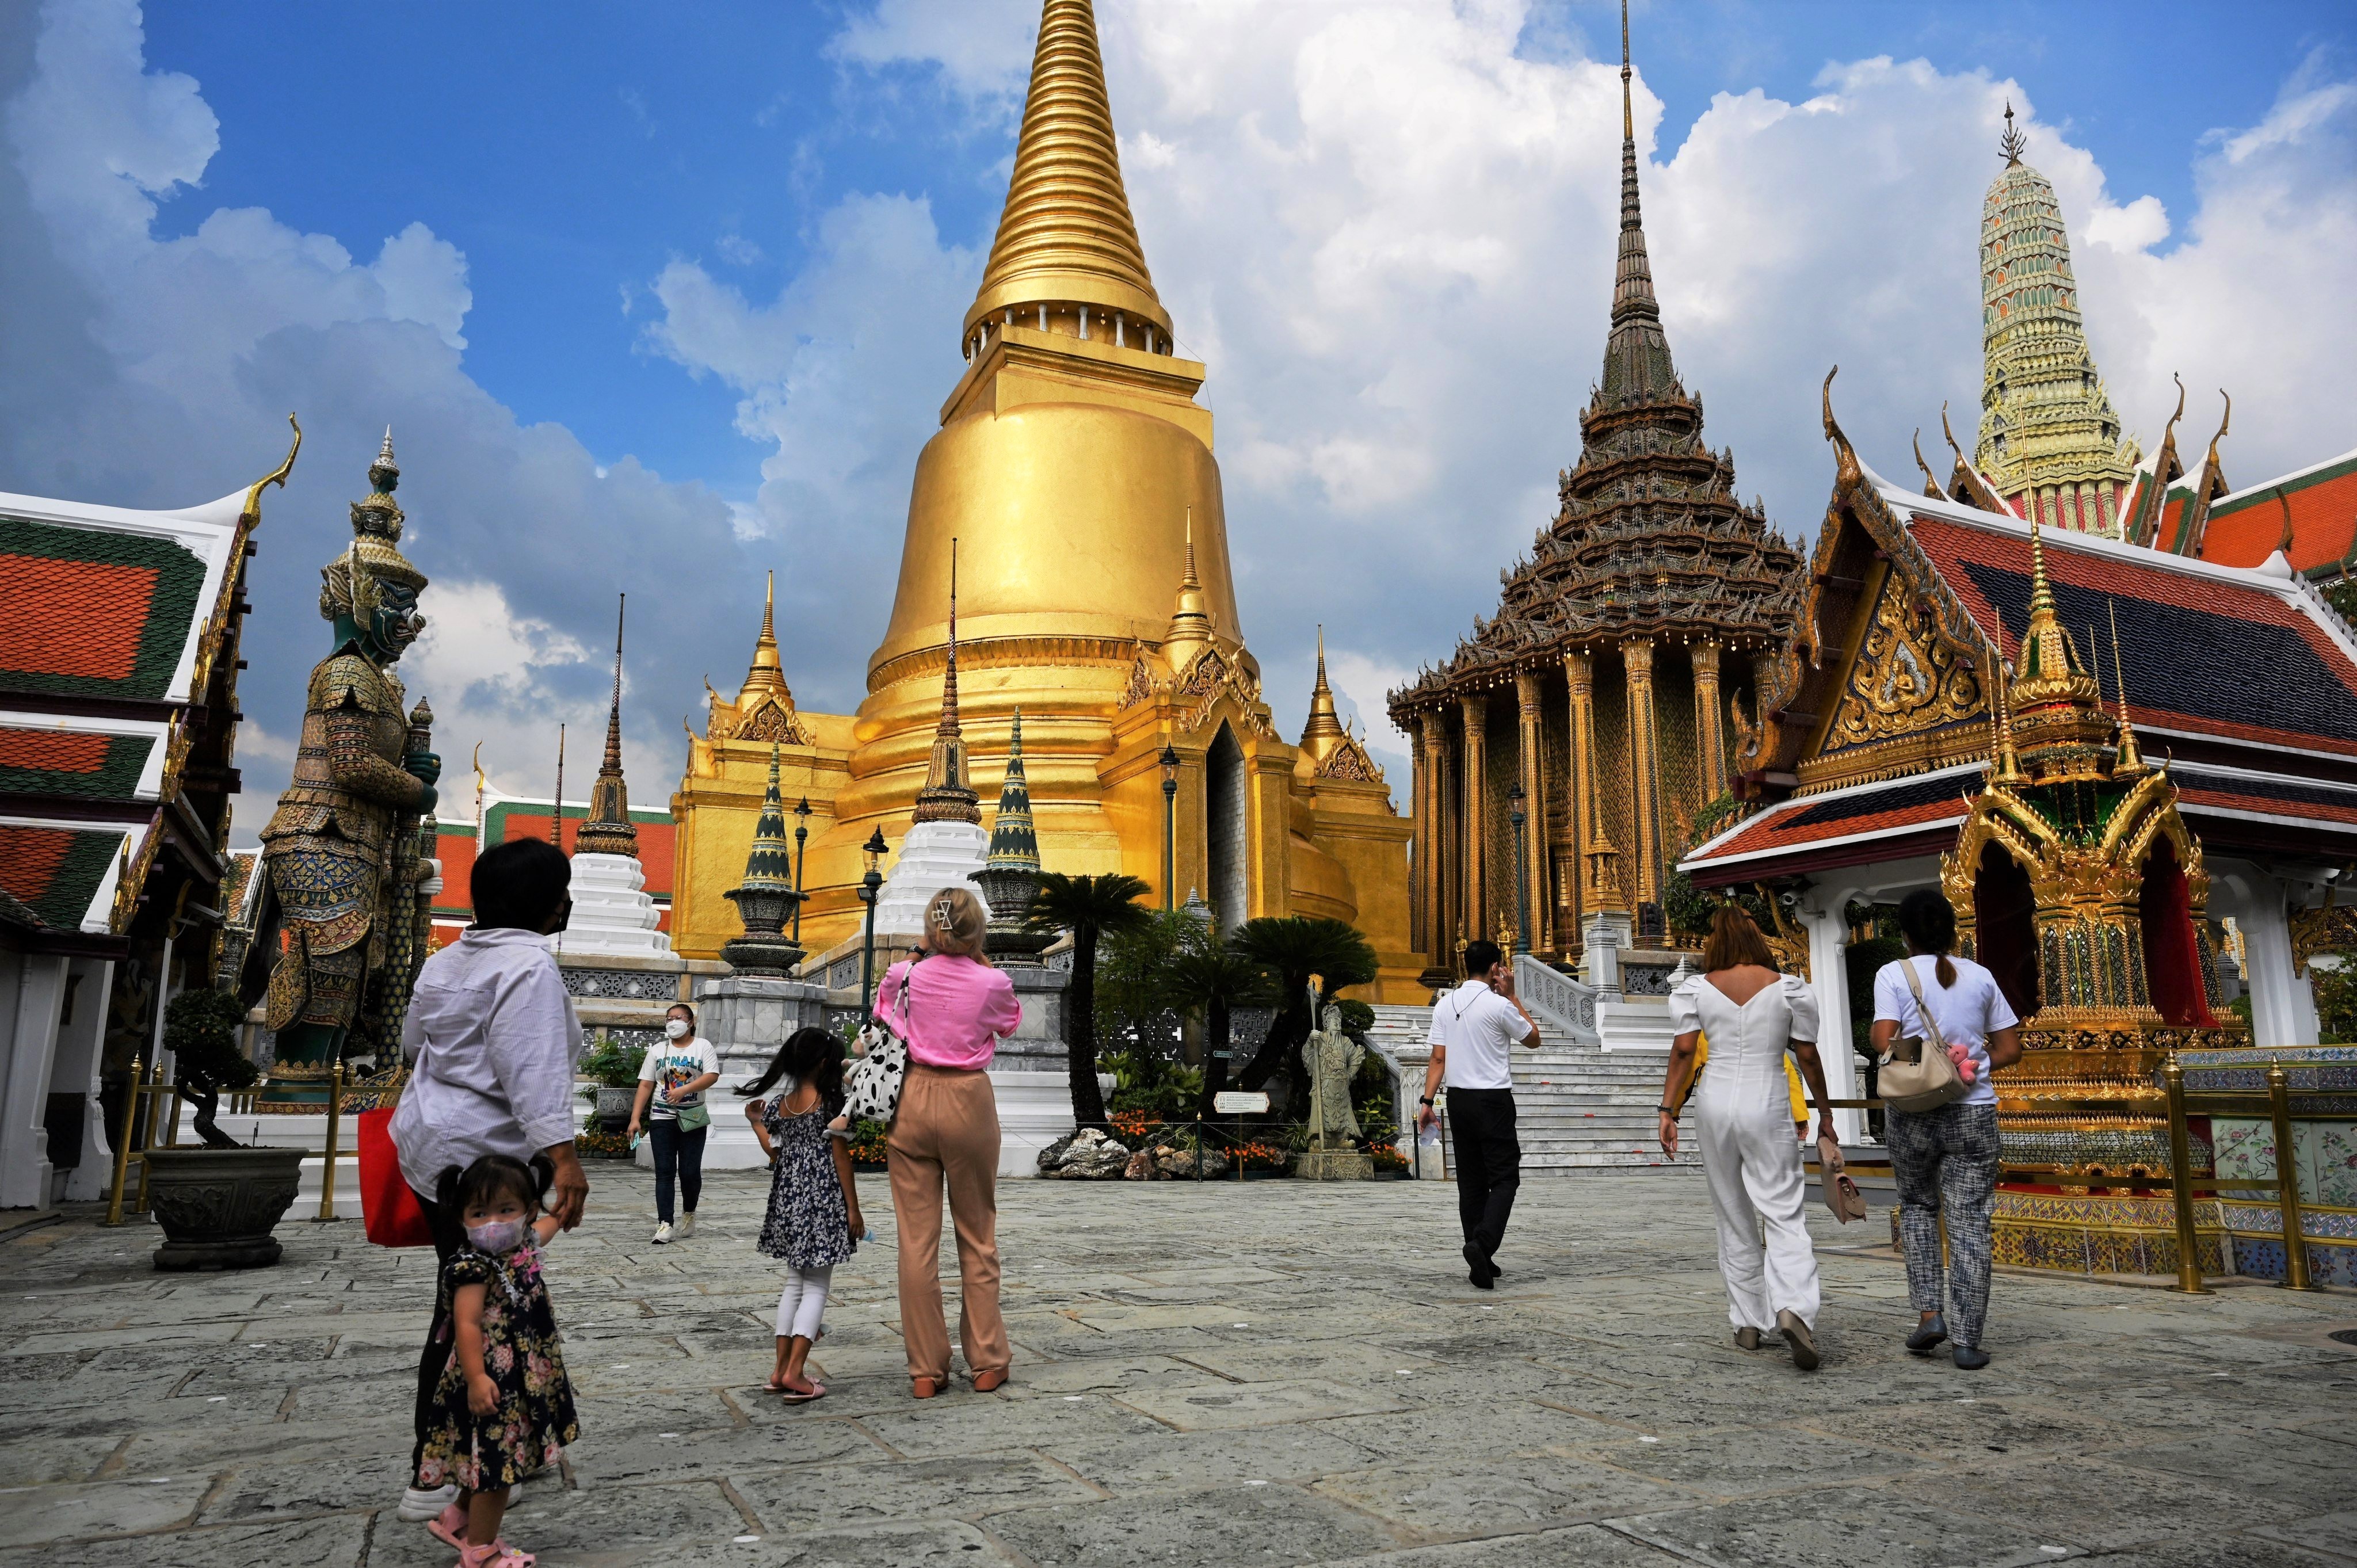 Du lịch Thái Lan mùa Hè Bangkok - Pattaya tham quan thủy cung Pattaya từ Sài Gòn giá tốt